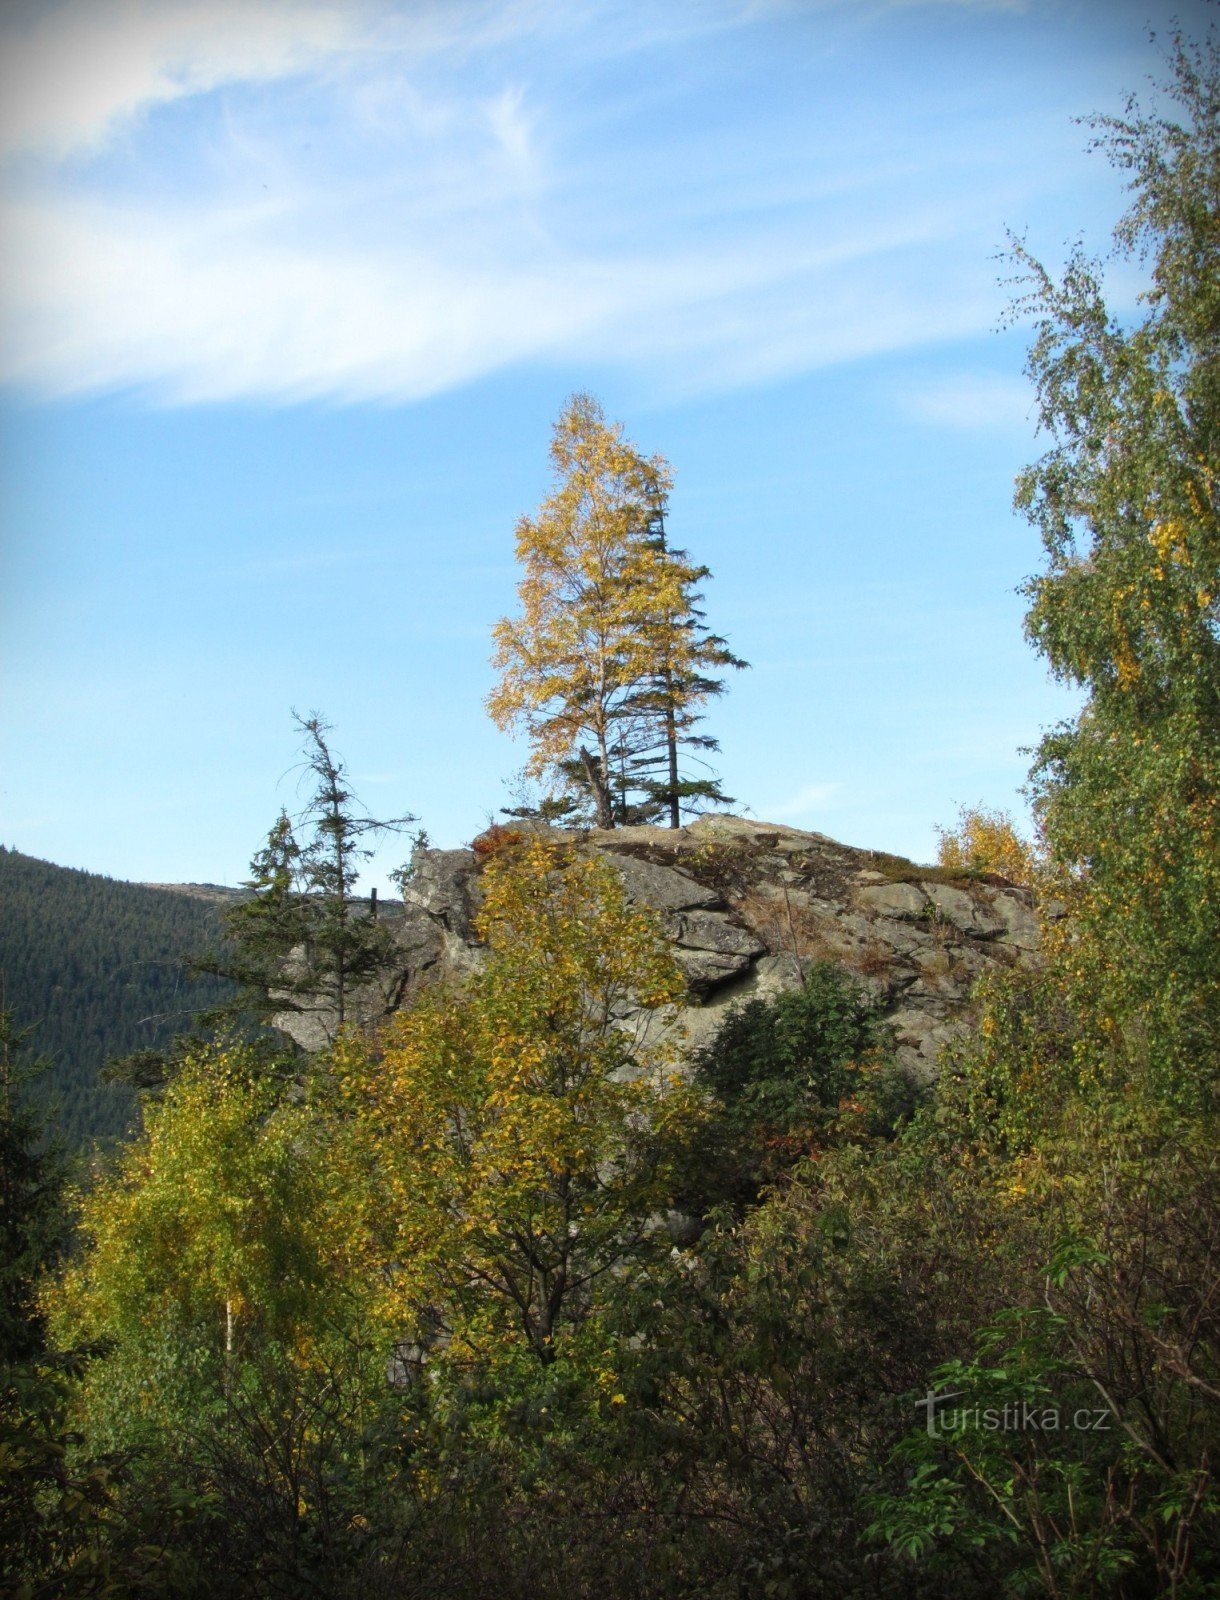 Tảng đá Kamzičí trên thung lũng Bílé potok - Dãy núi Jeseníky